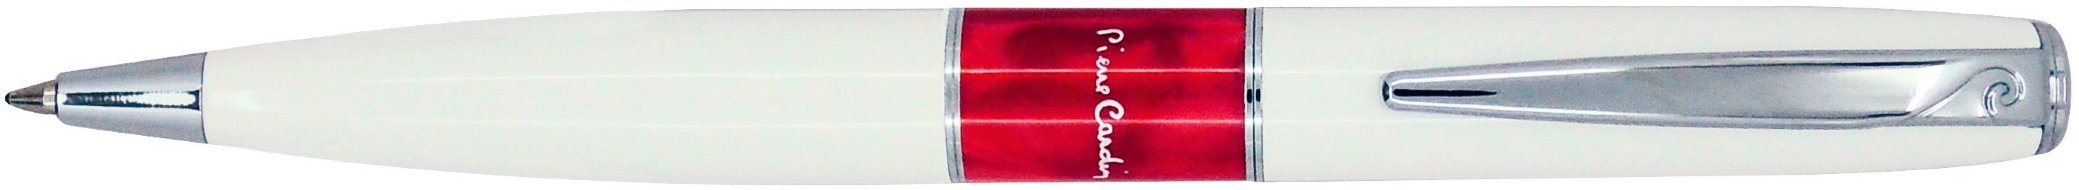 Шариковая ручка Pierre Cardin Libra белый лак, красная вставка из акрила